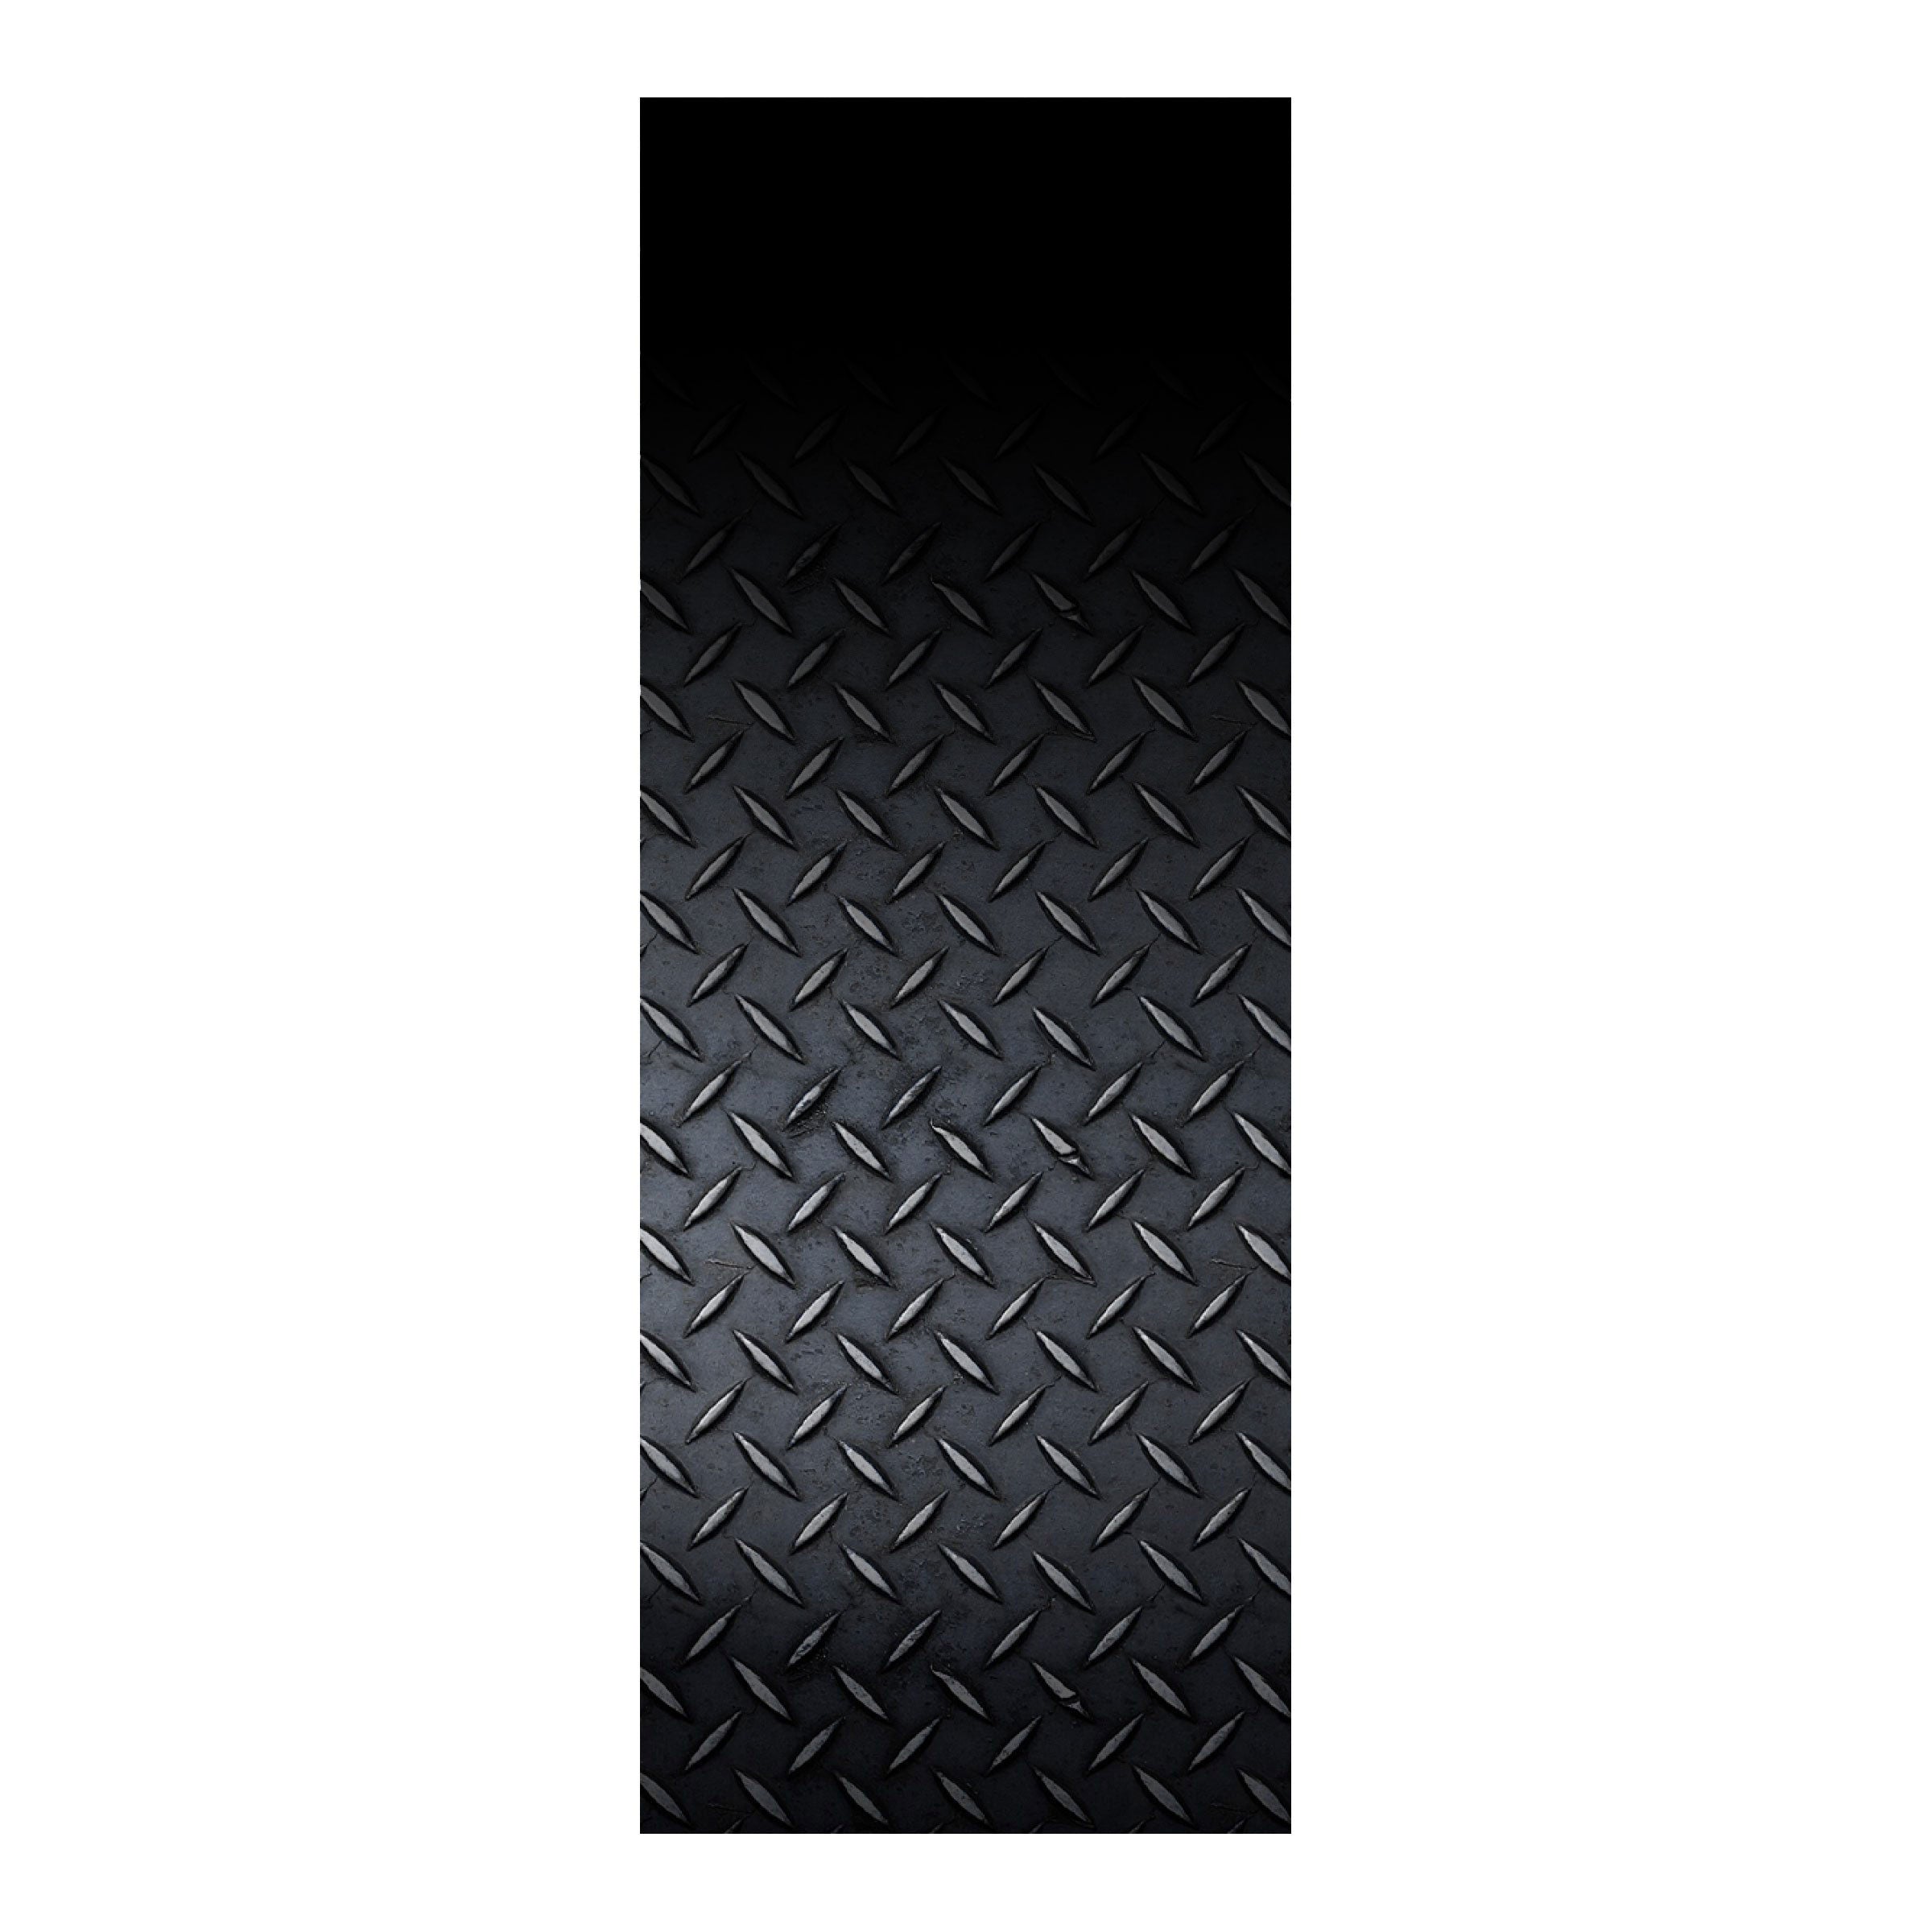 Rod Skinz Decorative Rod Wraps - Fade to Black